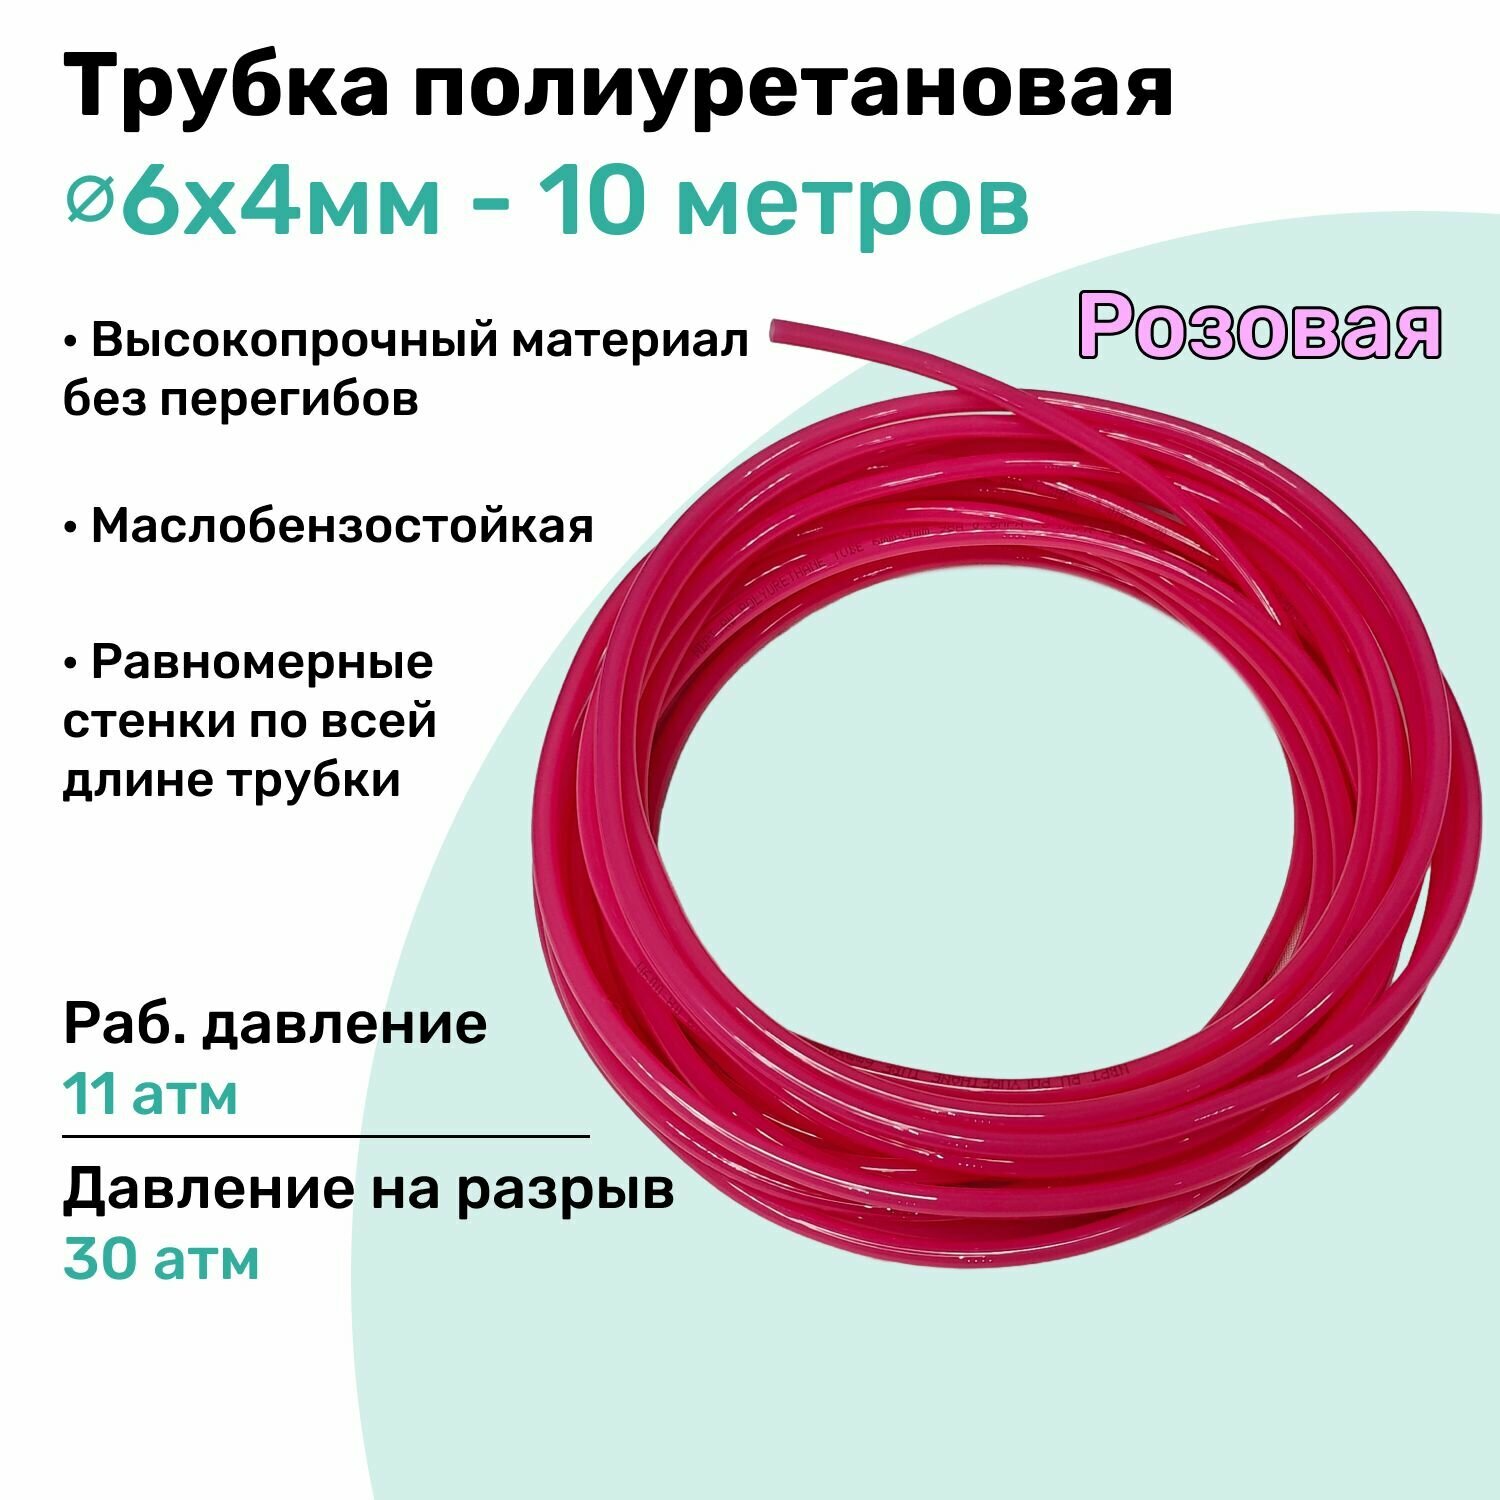 Трубка пневматическая полиуретановая 6х4мм - 10м, маслобензостойкая, воздушная, Пневмошланг NBPT, Розовая